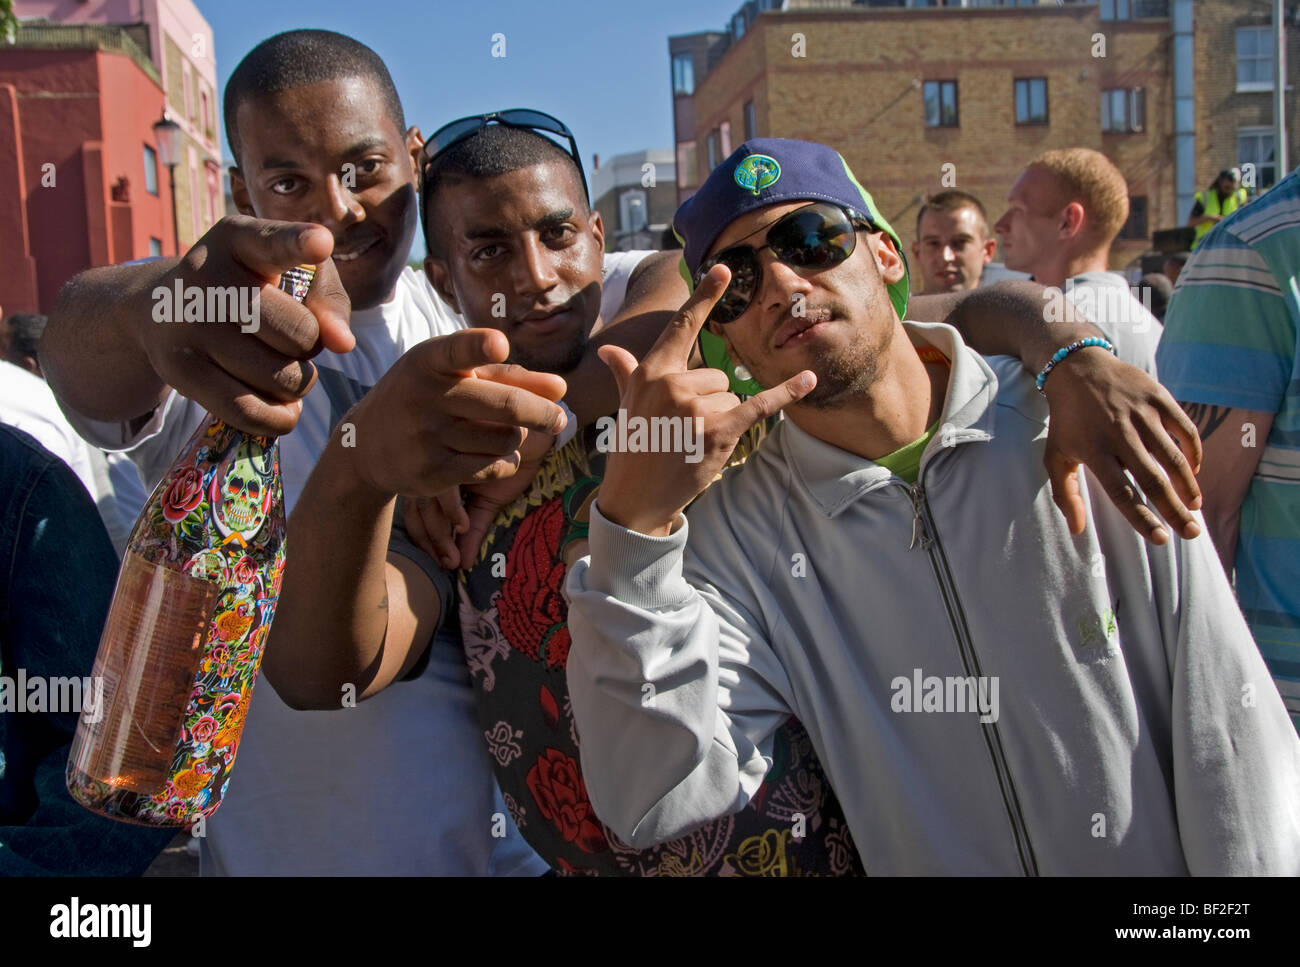 Tres hombres jóvenes con hip hop Gangsta o gestos en calles de Notting Hill. Foto de stock